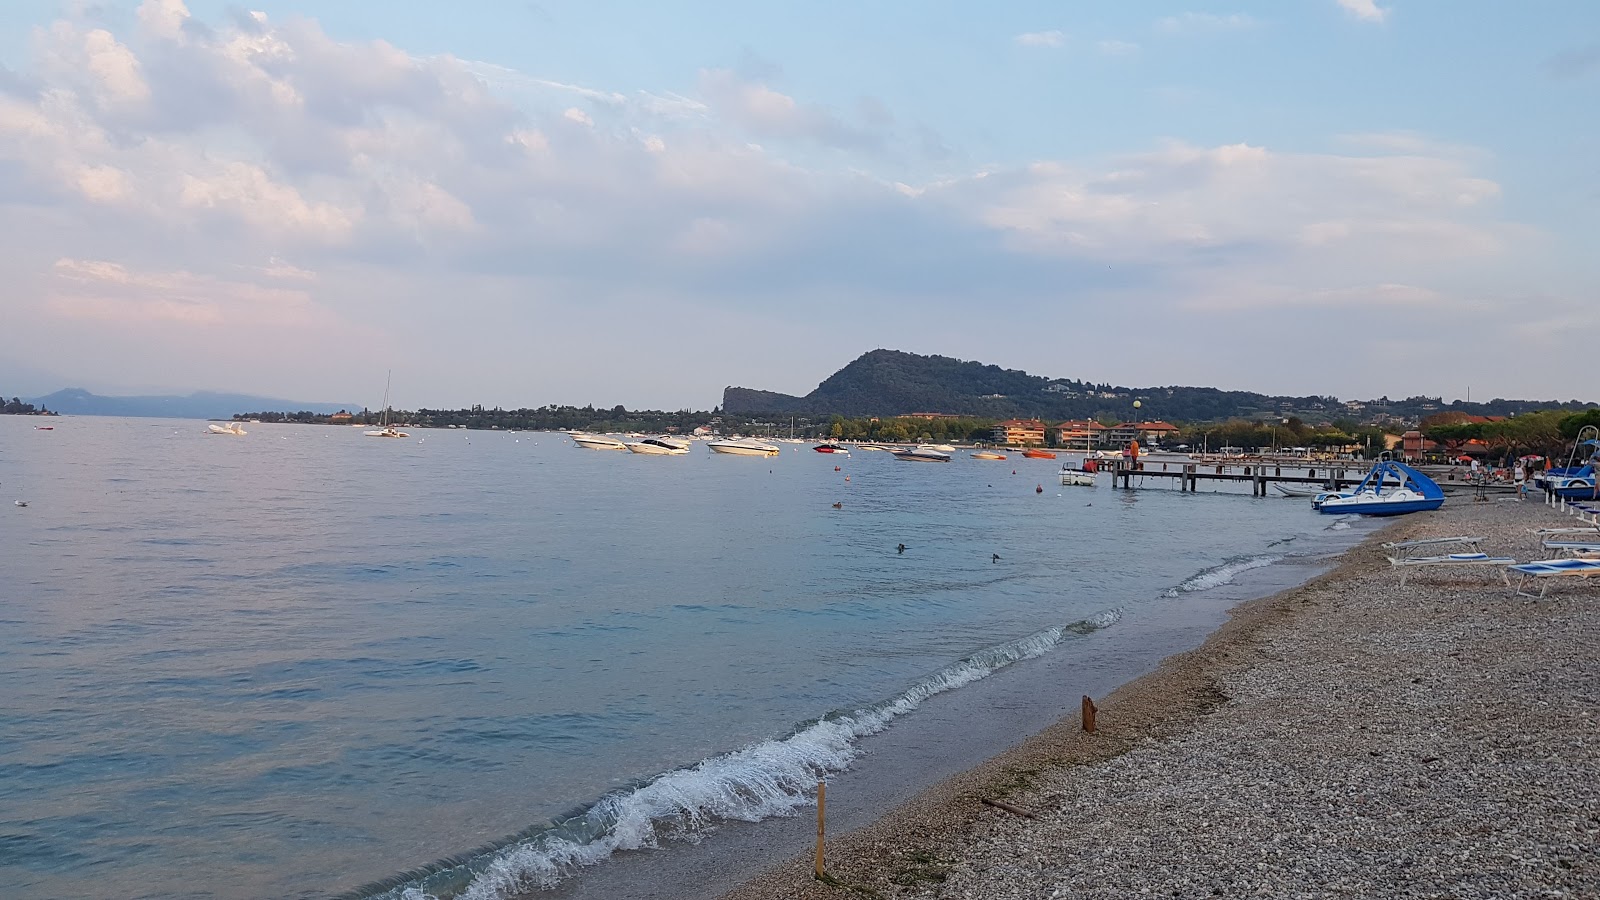 Φωτογραφία του Pieve Vecchia Beach παροχές περιοχής